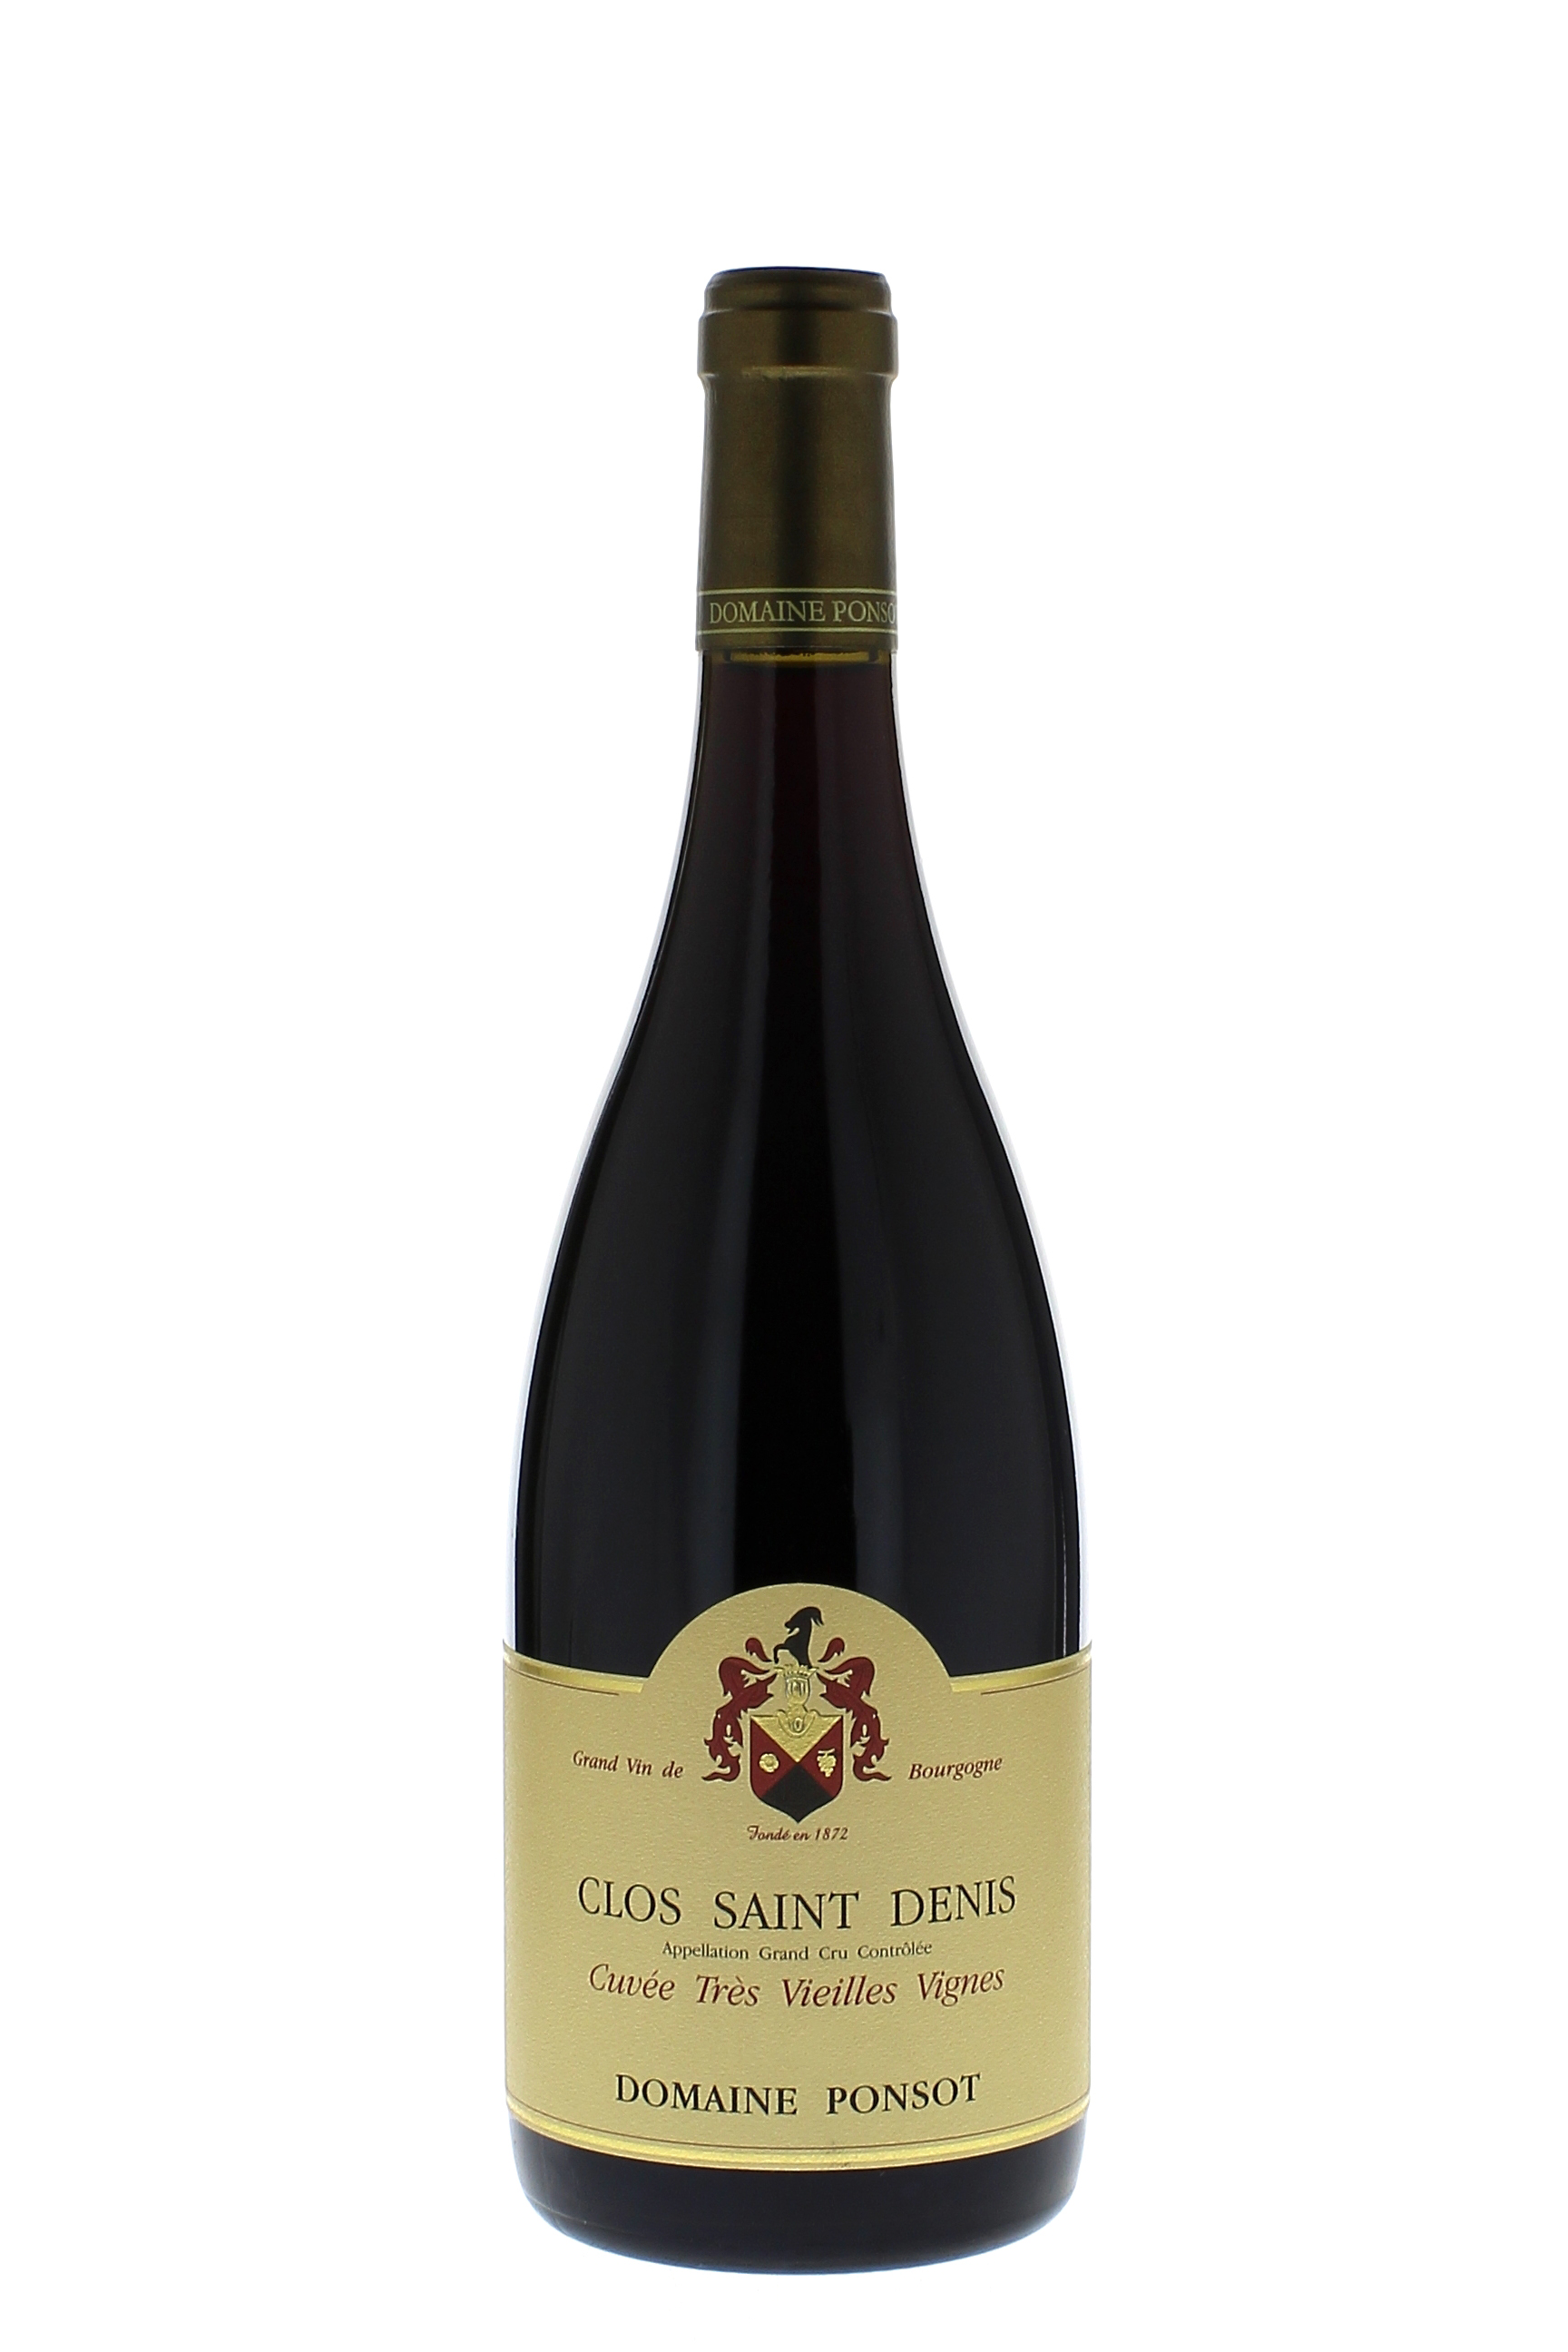 Clos saint denis vieilles vignes grand cru 2013 Domaine PONSOT, Bourgogne rouge